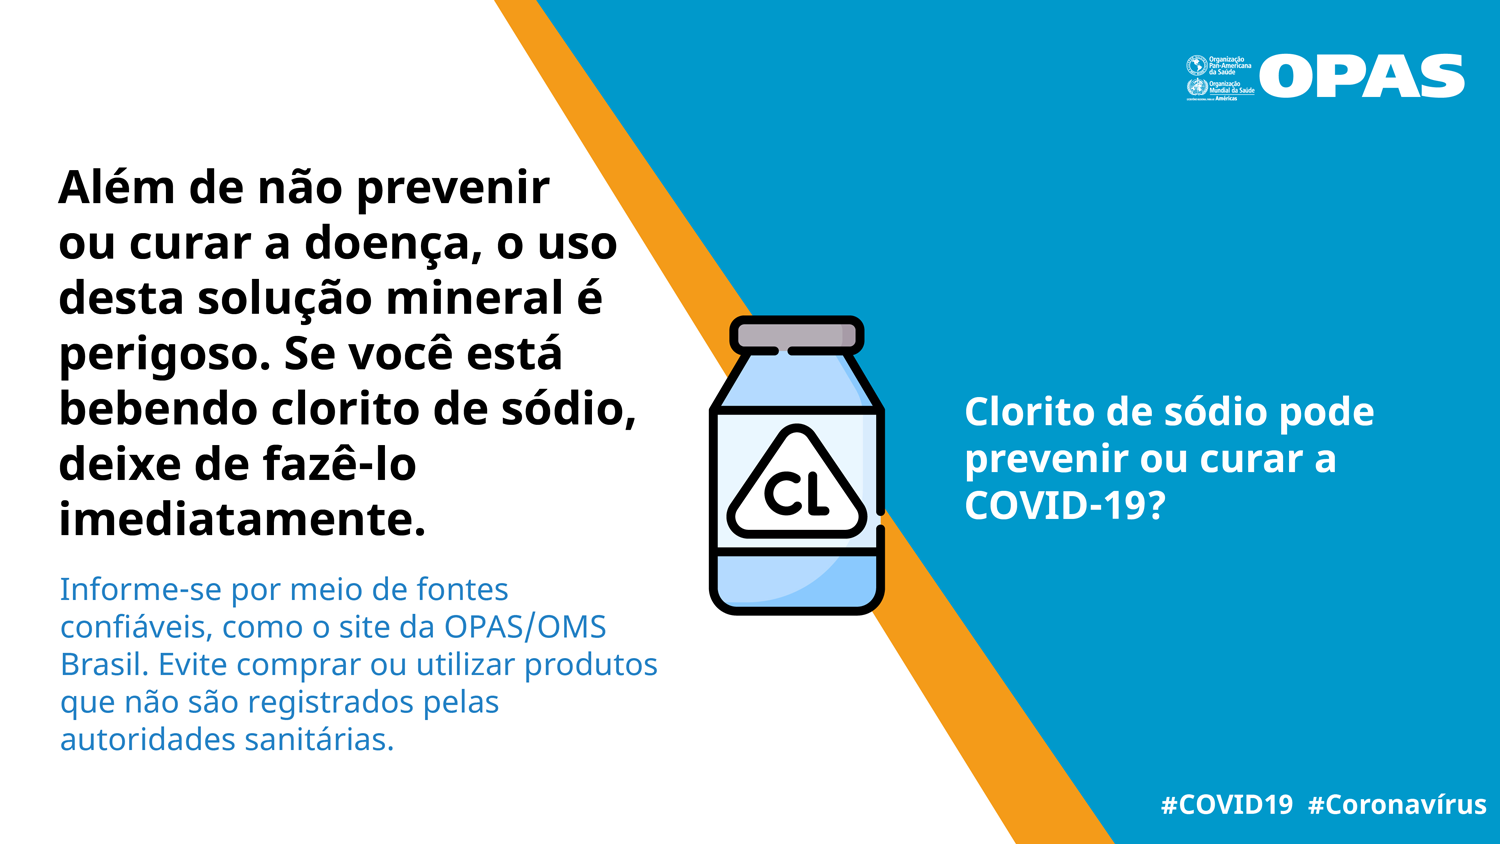 Além de não prevenir ou curar a doença, o uso desta solução mineral é perigoso. Se você está bebendo clorito de sódio, deixe de fazê-lo imediatamente.